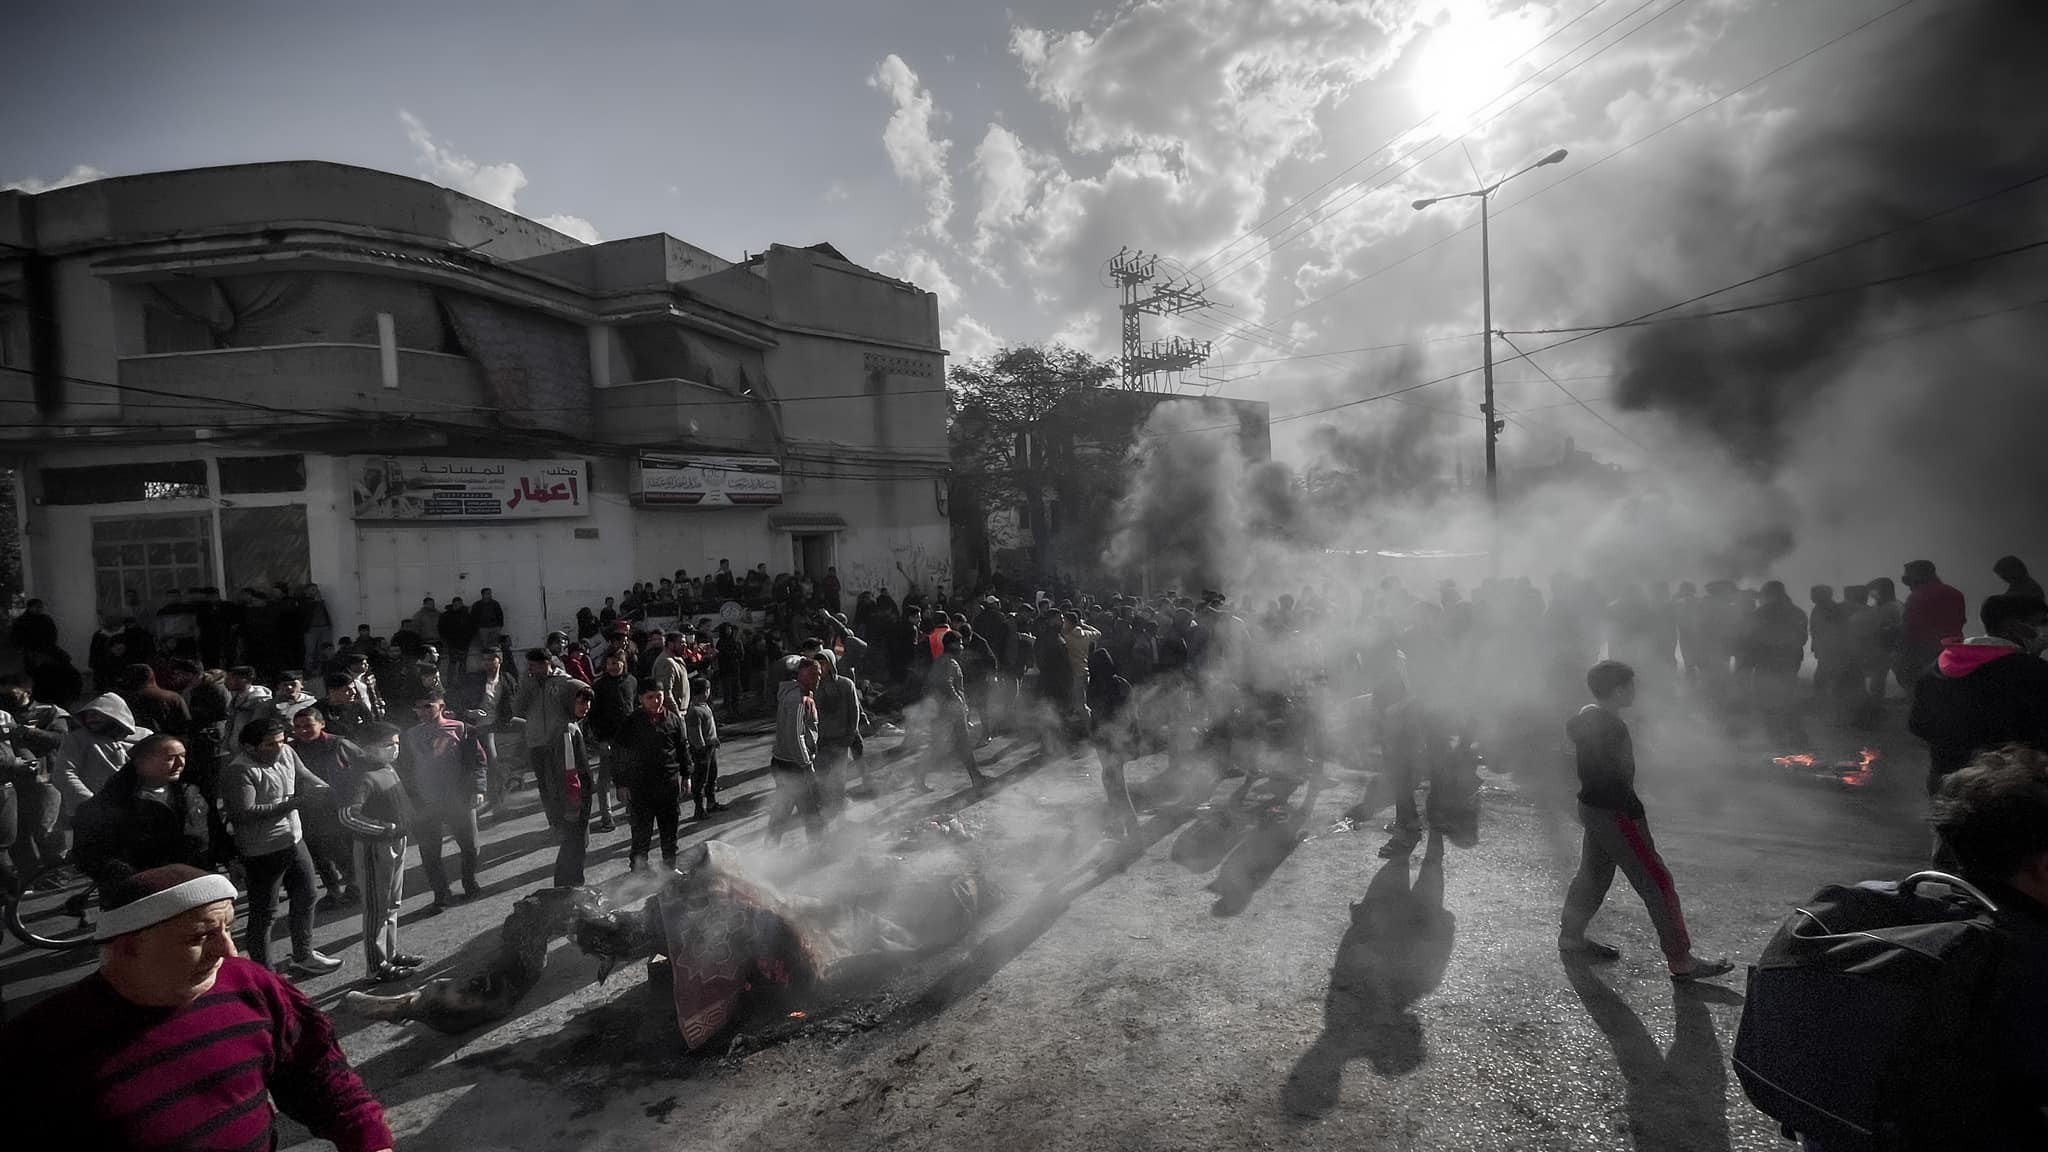 احتجاجات في بيت لاهيا رفضا لقرار اقتطاع أراضي من المدينة   222.jpg